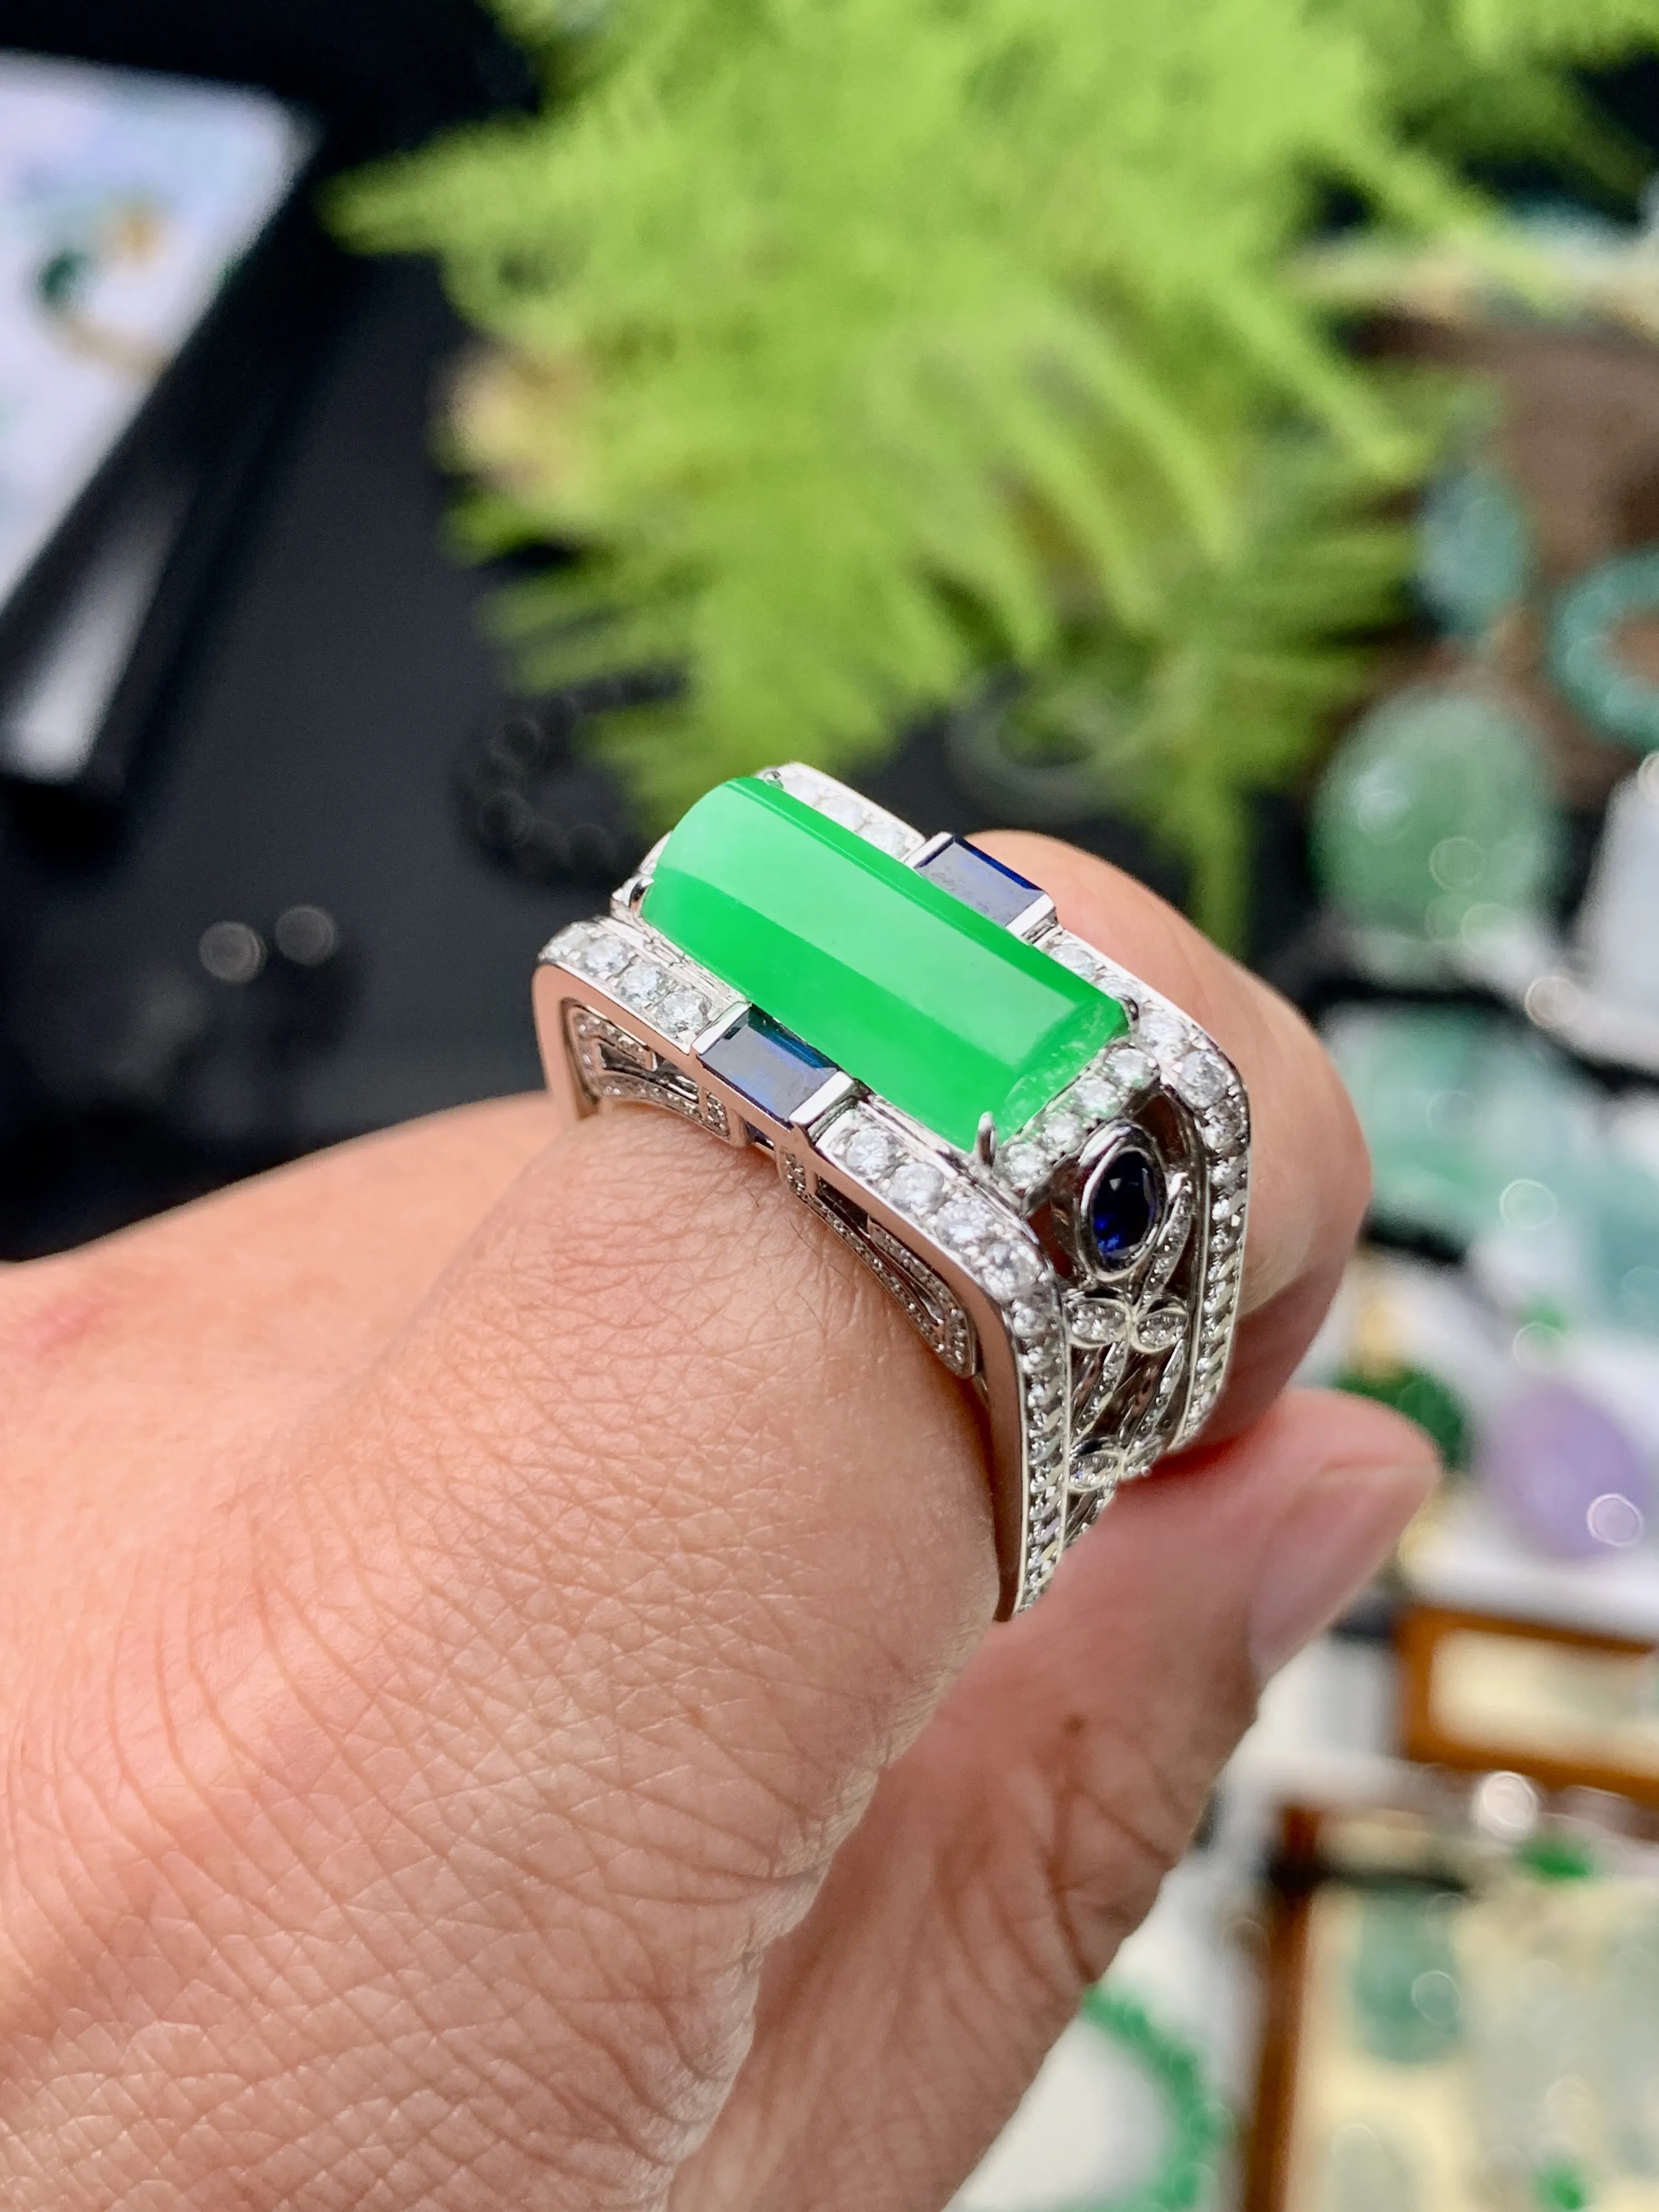 【档次】冰阳绿马鞍戒指，很霸气独特的款式，奢华镶嵌，种地优秀，上手手感很好。戒面上佳，冰阳动人，推荐入手。